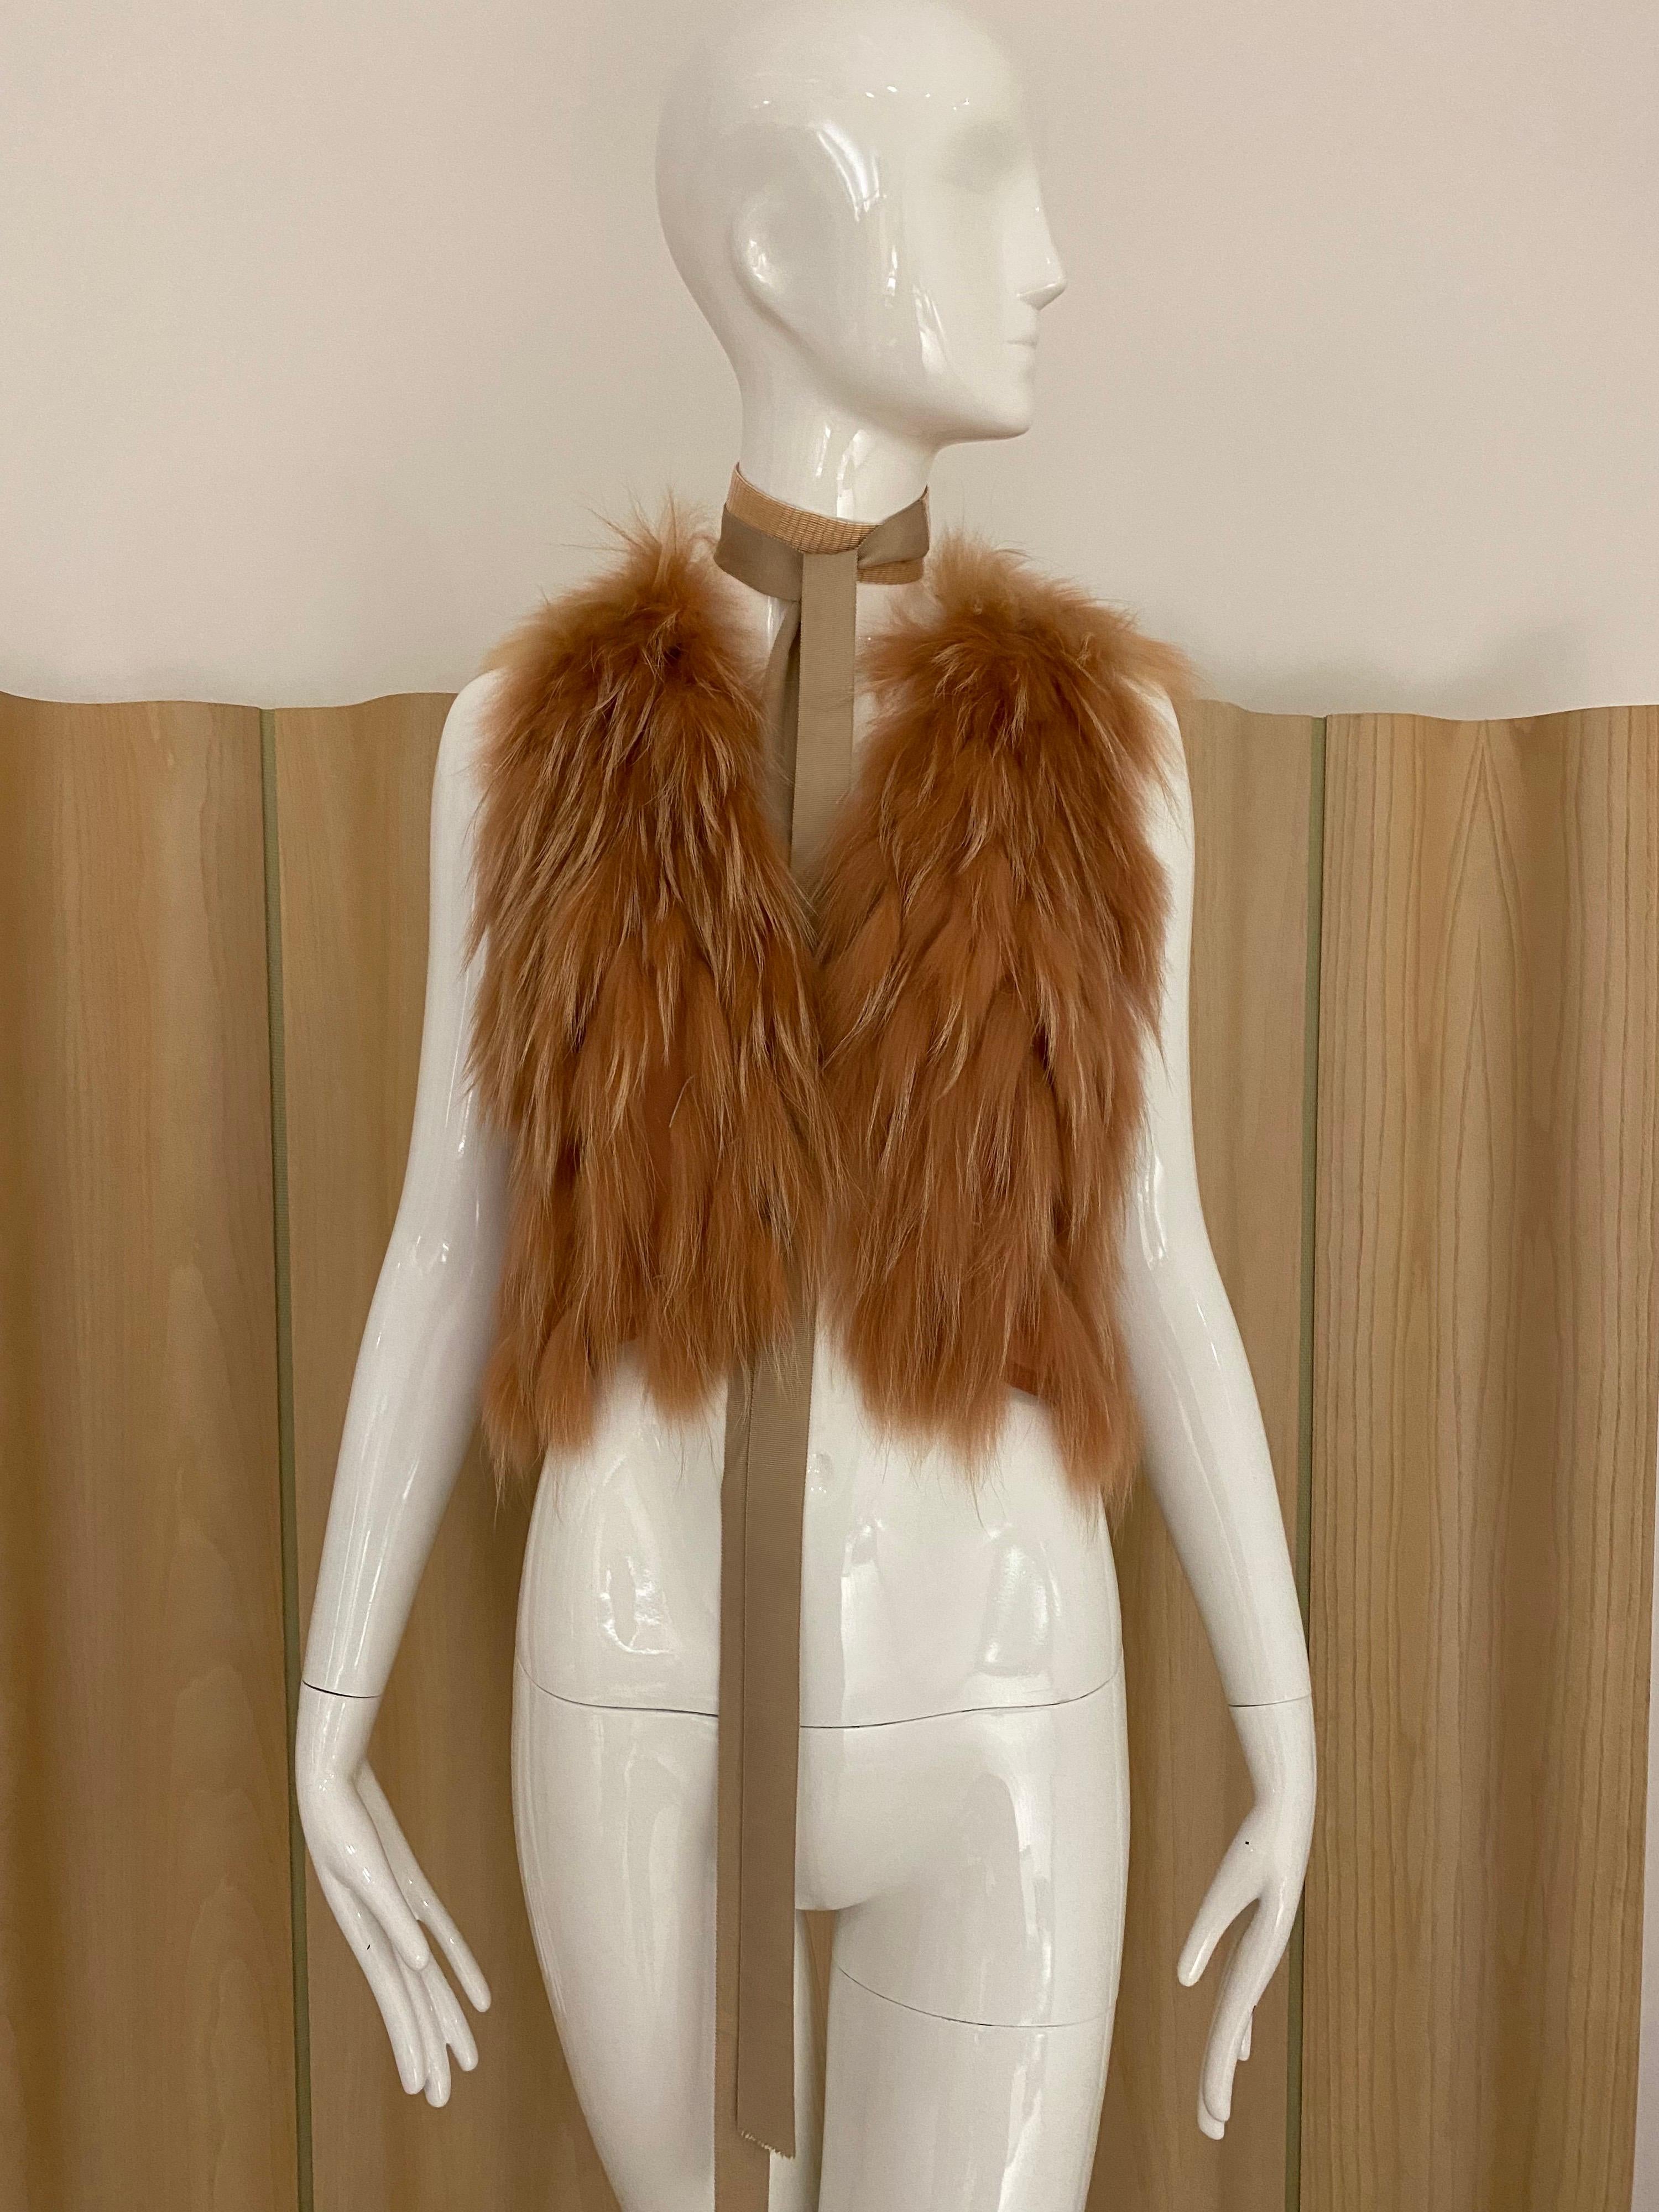 J Mendel light orange fur vest with belt .
Fit size 0/2/4 / Small
